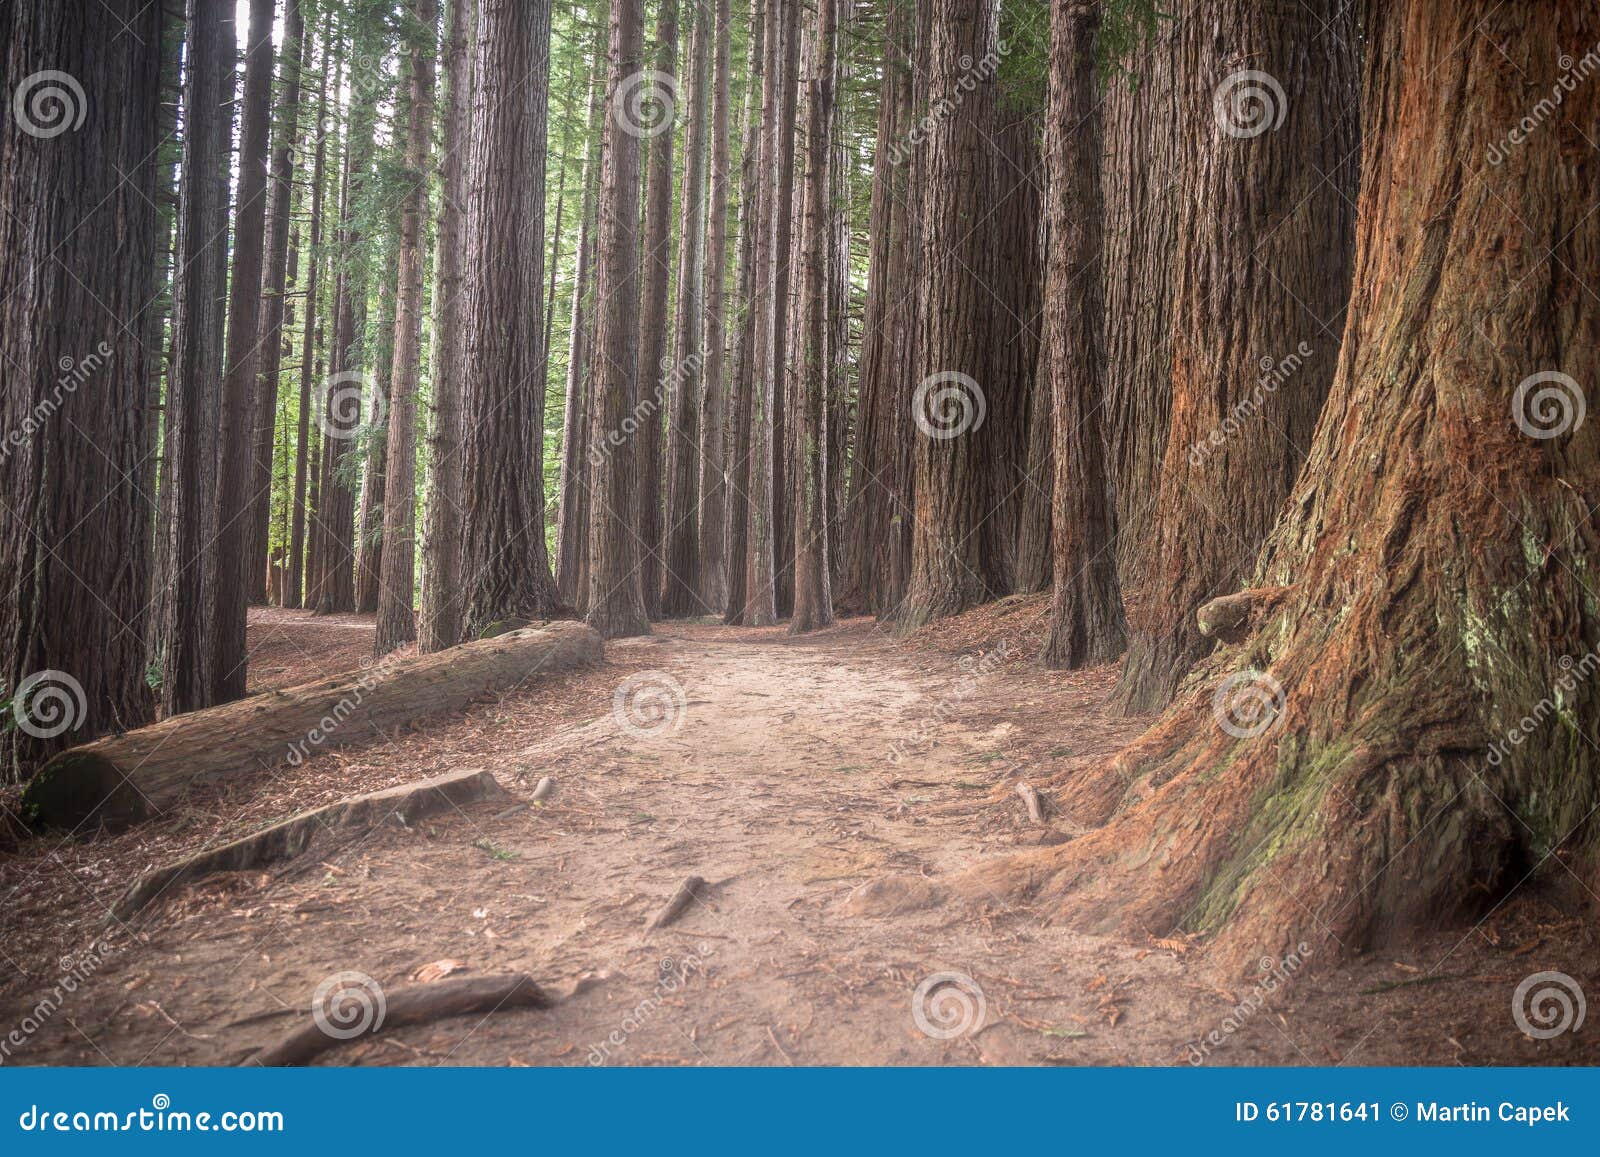 new zealand redwoods